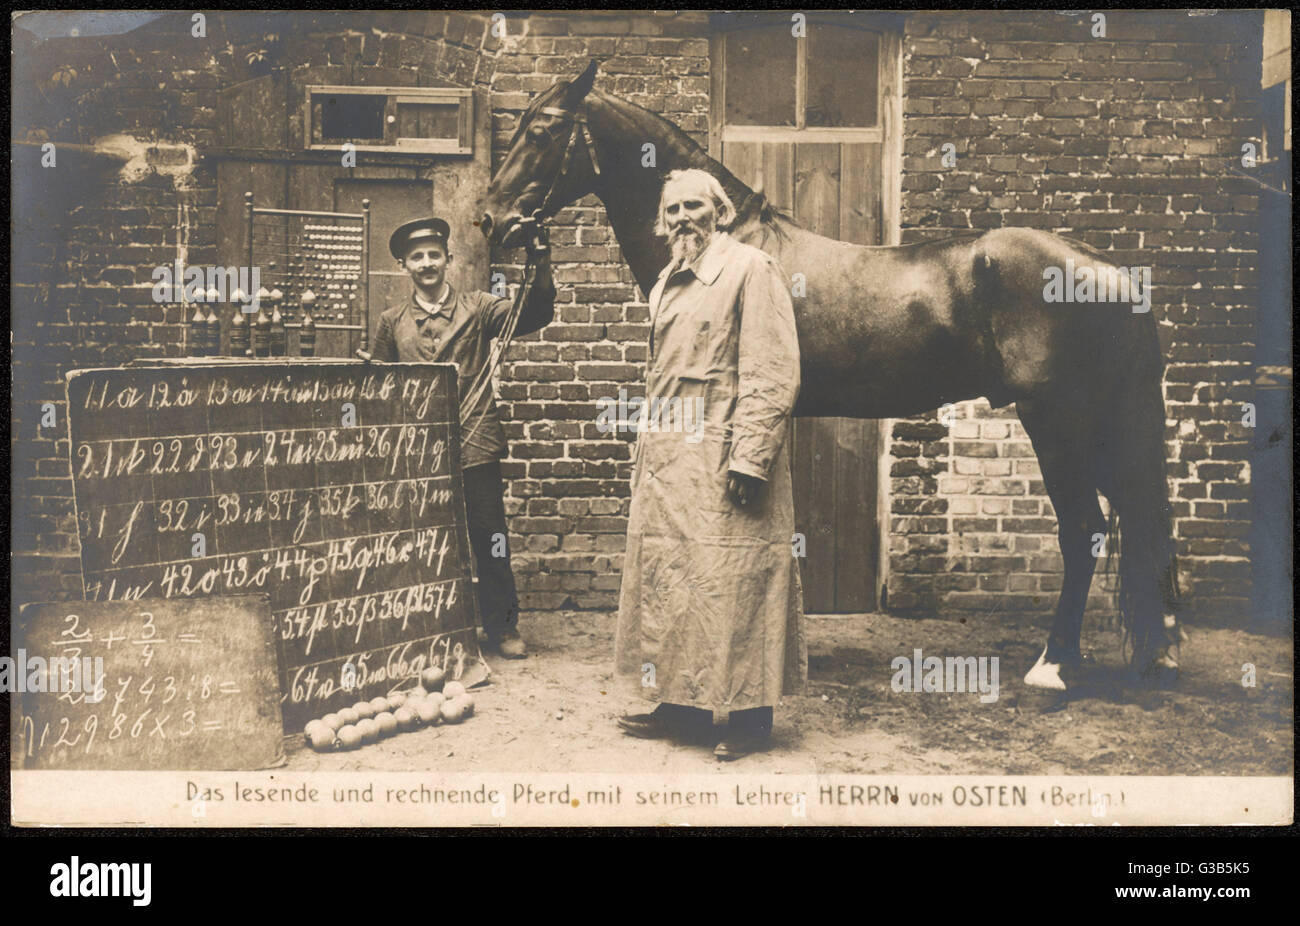 "Hans" ein Pferd der einzigartigen mathematischen Fähigkeit, mit seinem Führer und seinem Lehrer Wilhelm von Osten, wer überzeugt war, dass Tiere eine Intelligenz gleich Menschen besessen.     Datum: 1904 Stockfoto